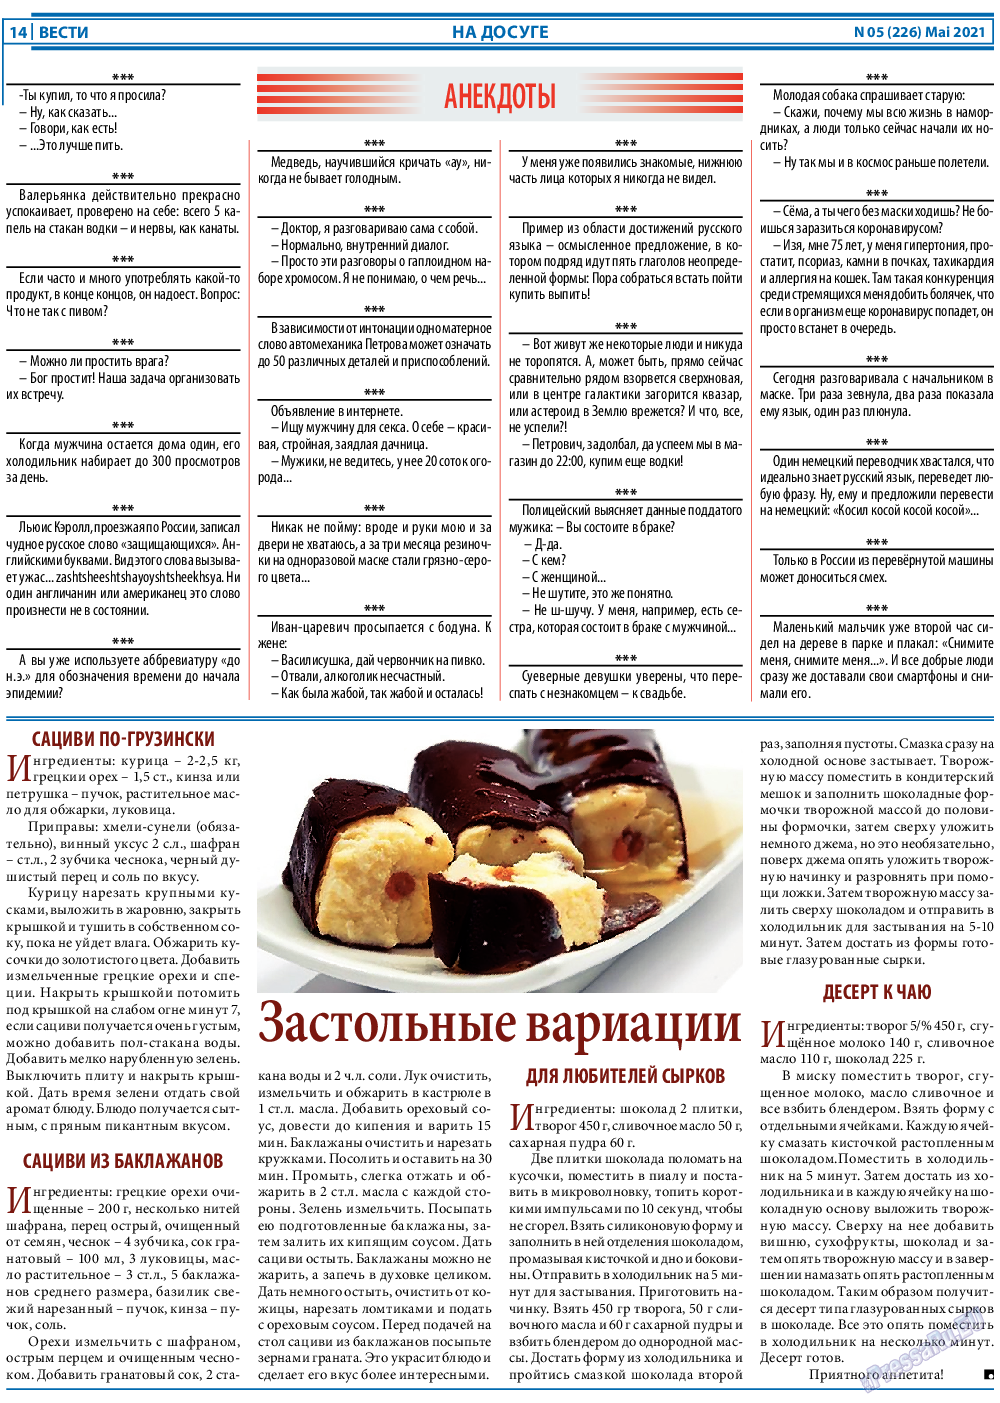 Вести, газета. 2021 №5 стр.14